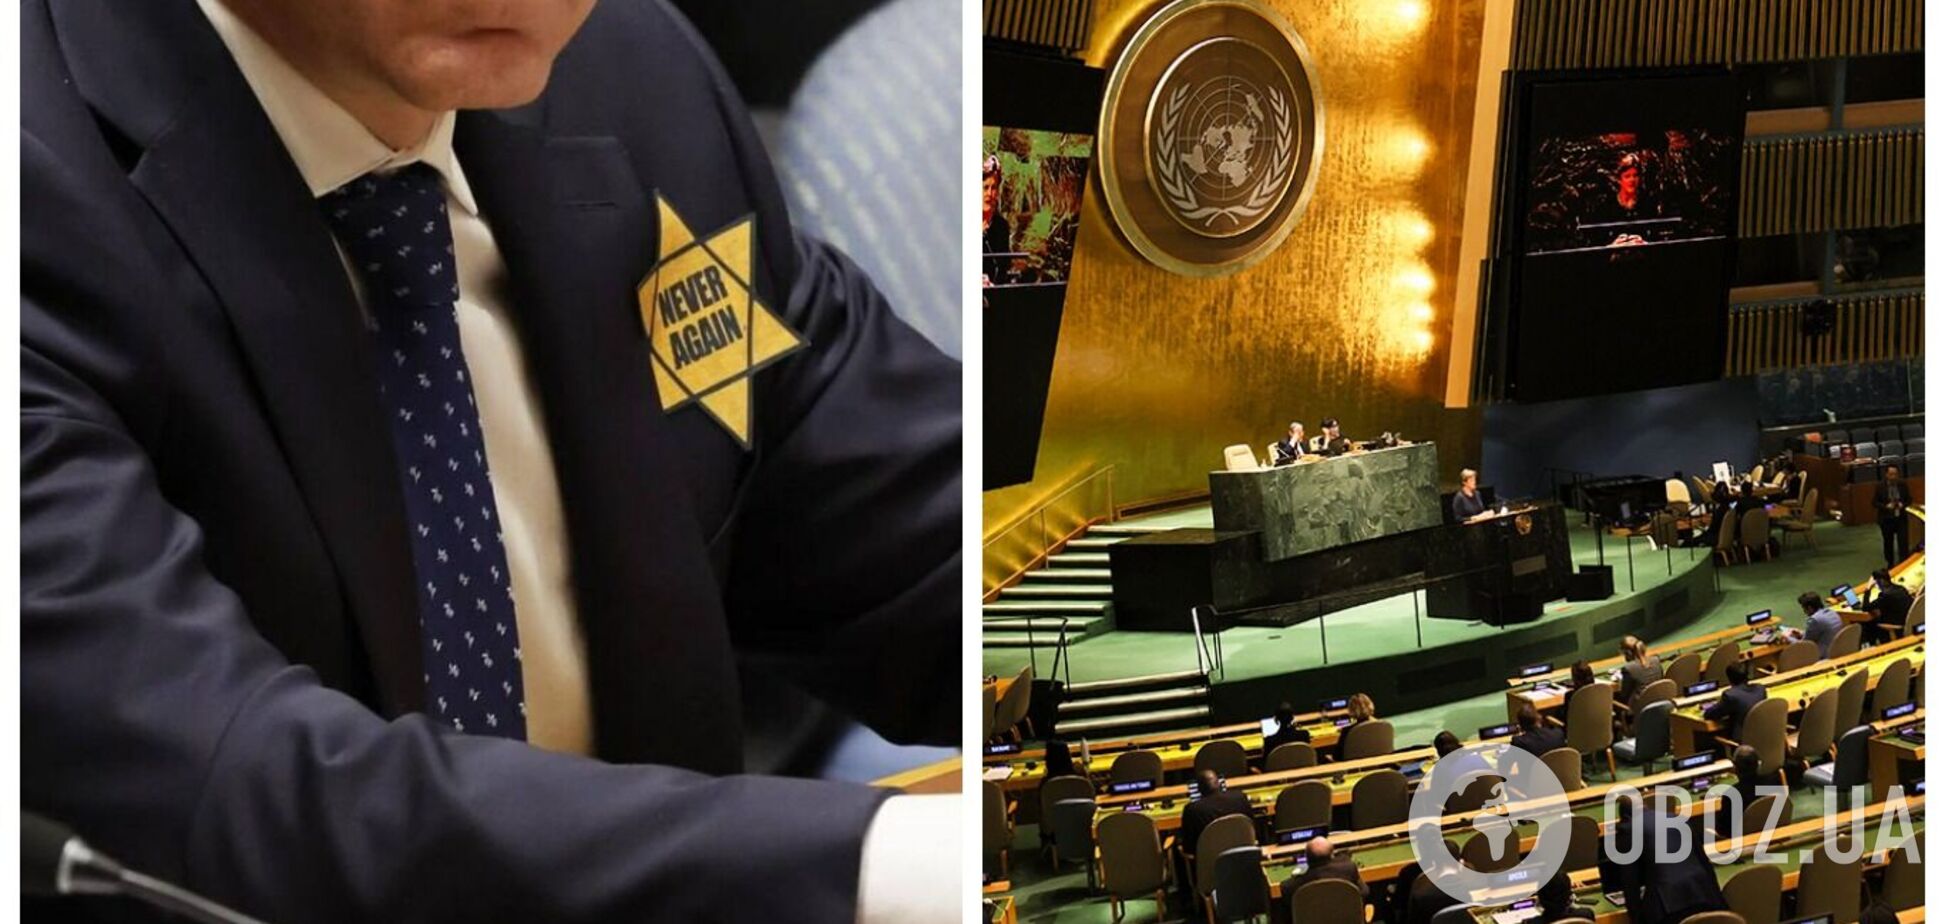 'Мовчання перед лицем зла': дипломати Ізраїлю розкритикували позицію ООН щодо ХАМАС та надягли жовті зірки у залі. Відео